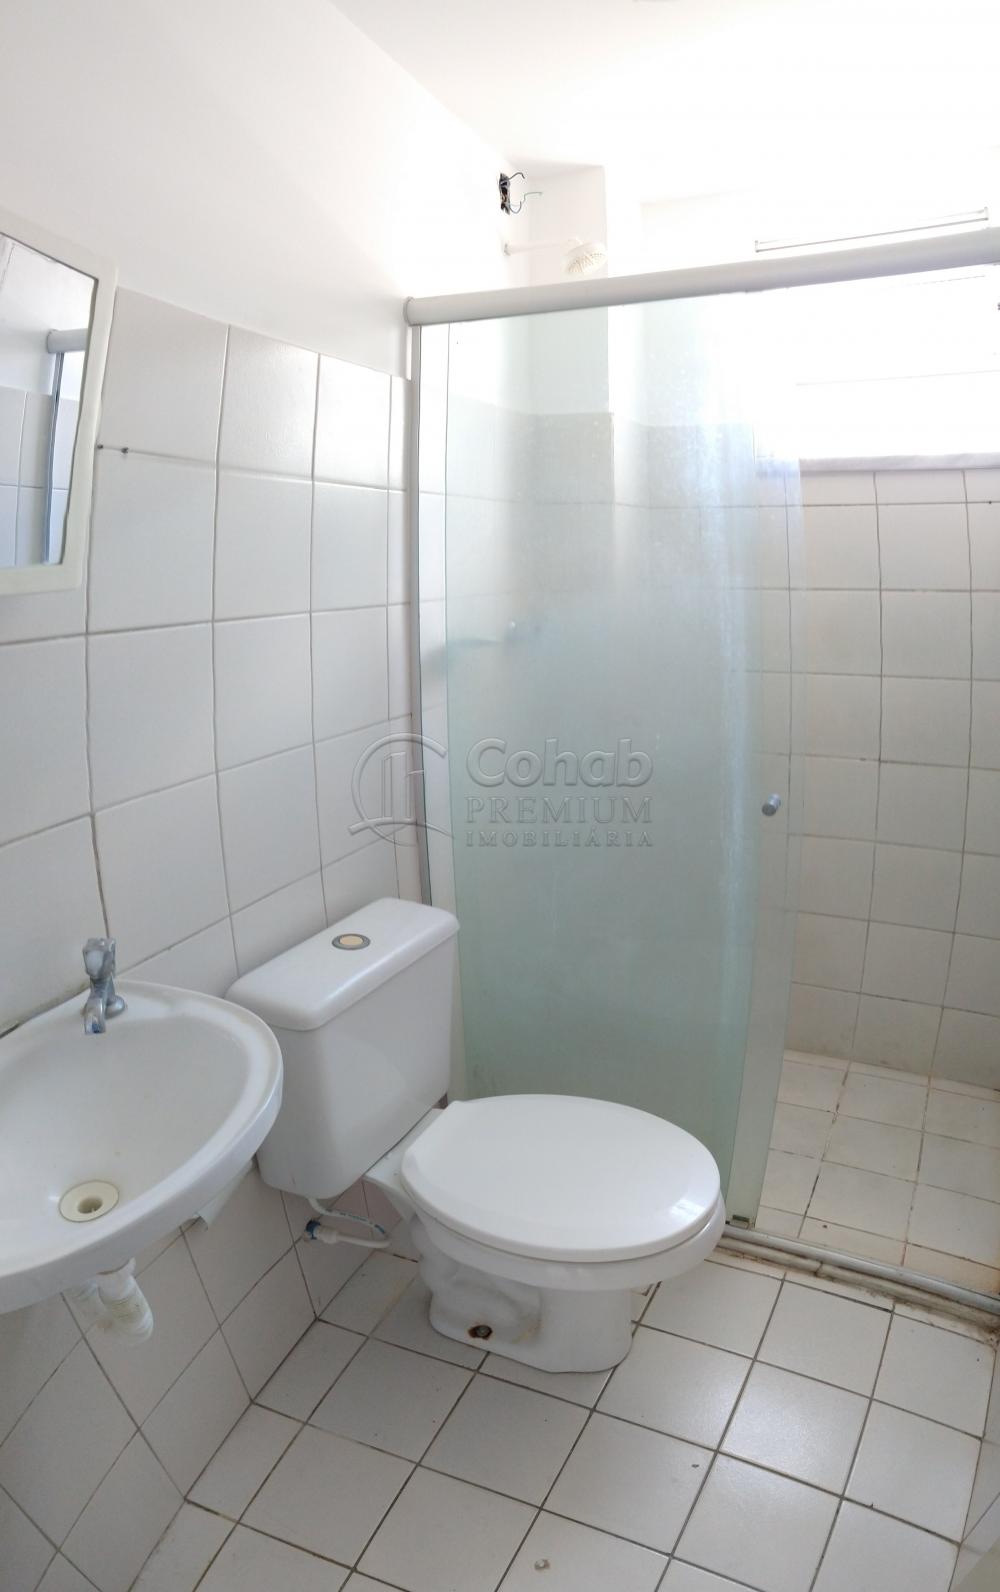 Alugar Apartamento / Padrão em Aracaju R$ 600,00 - Foto 7